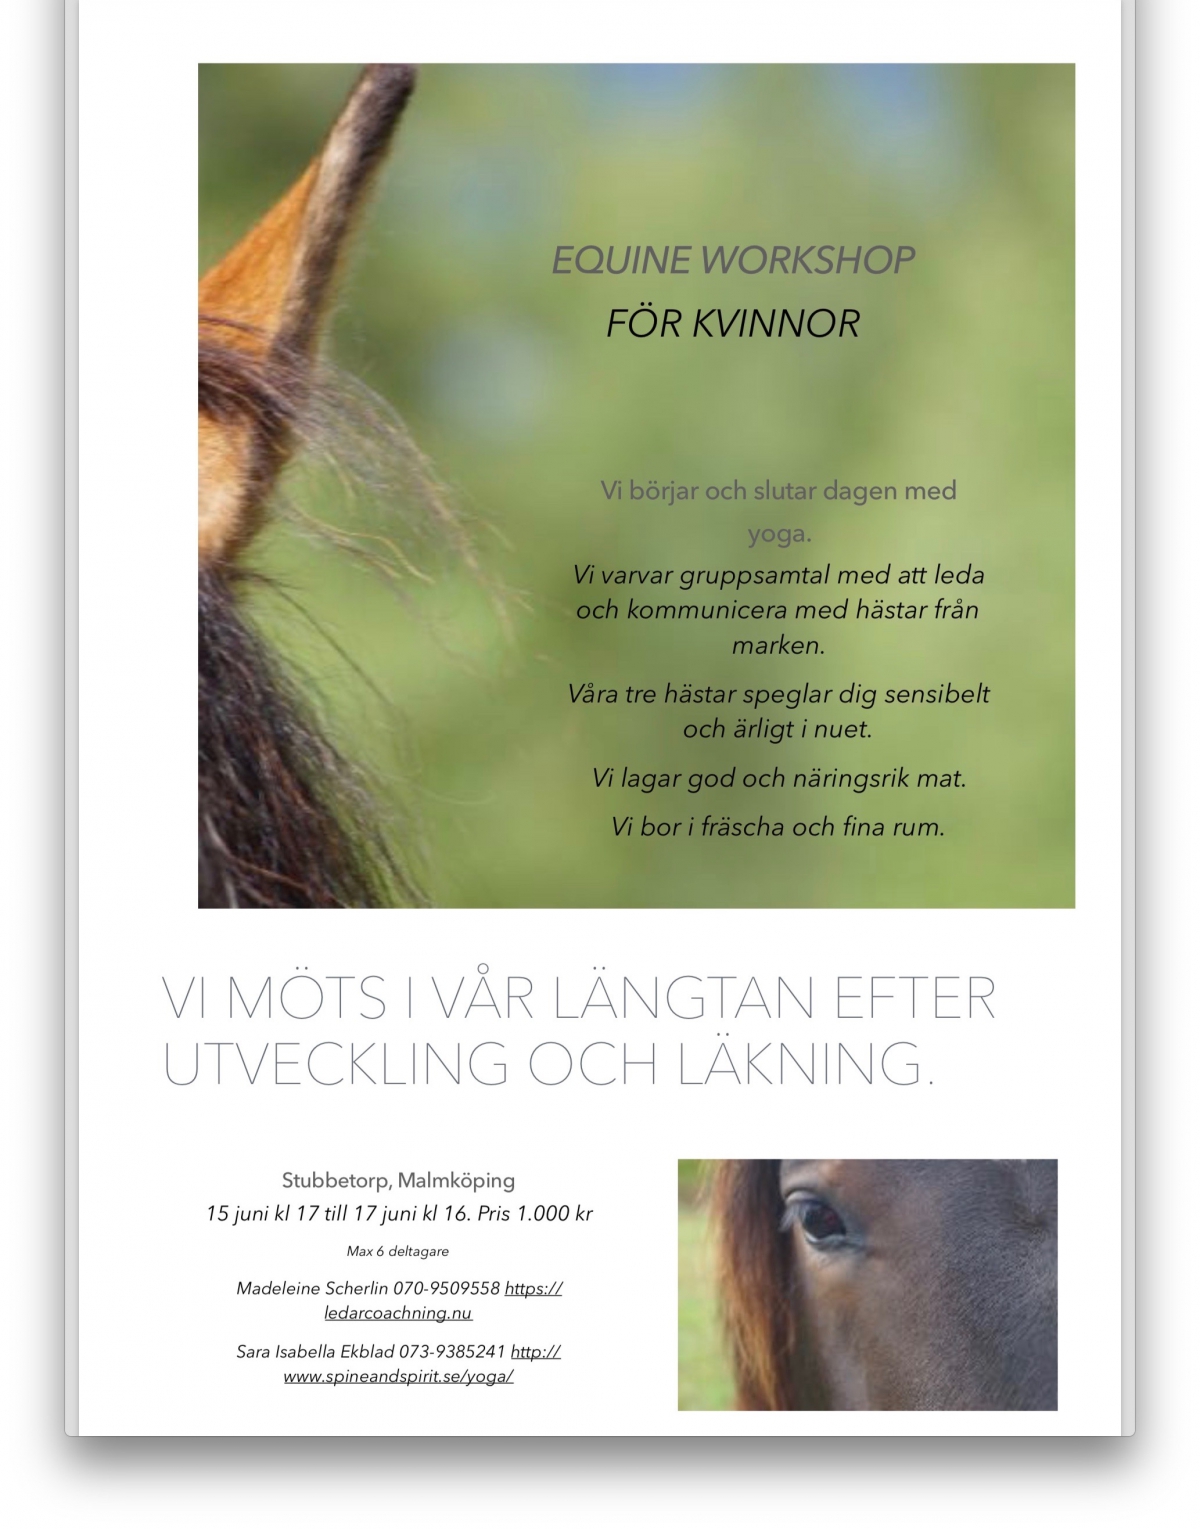 Equine workshop för kvinnor